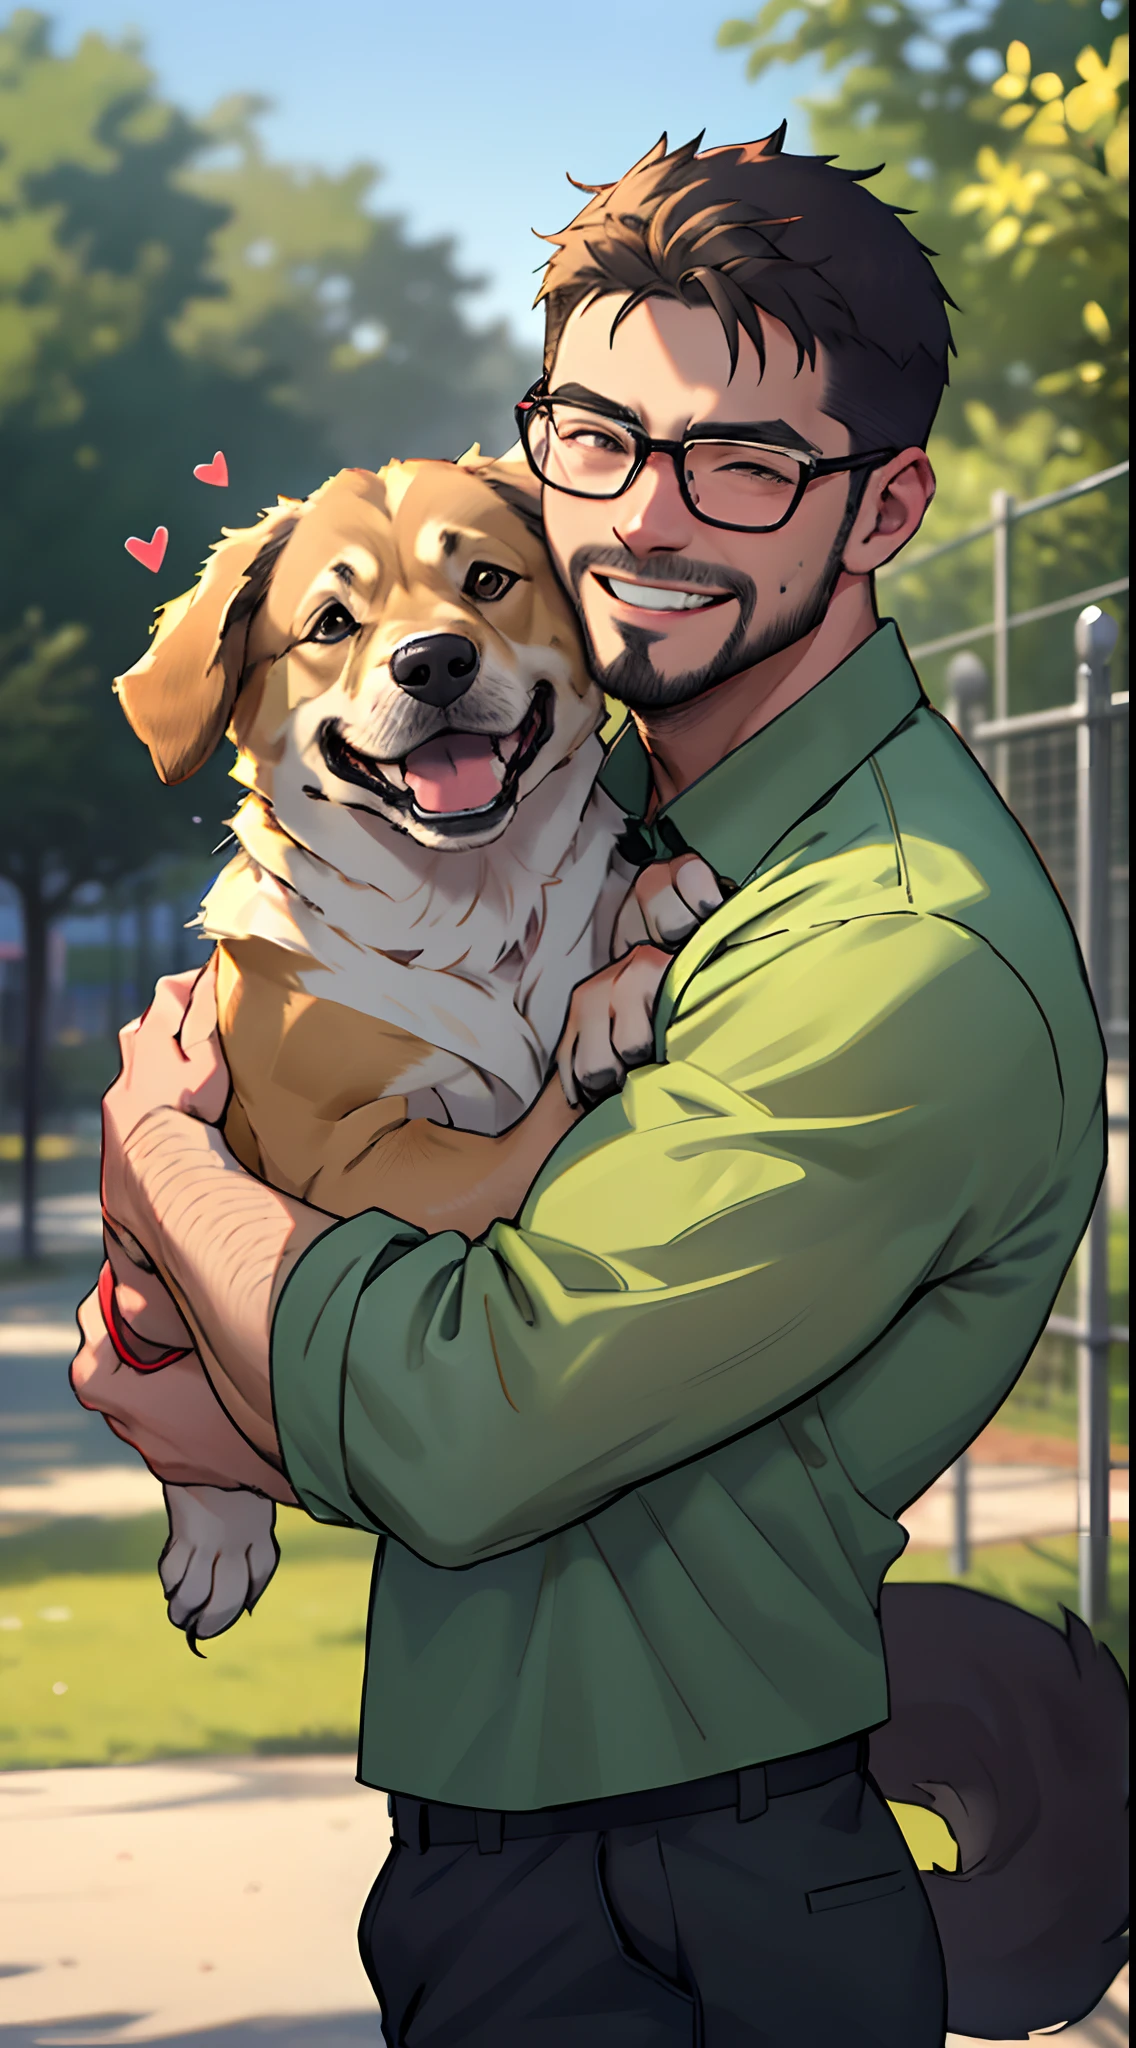 수염을 기른 남자와 독일 셰퍼드 개, 안경을 쓴 남자, 녹색 셔츠, 개 공원에서, 개를 안고 안고 있는 남자, 높고 상세한, 얼굴 초점, 행복한 미소, 행복한 개, 마음이 따뜻해지는, 시에서 본